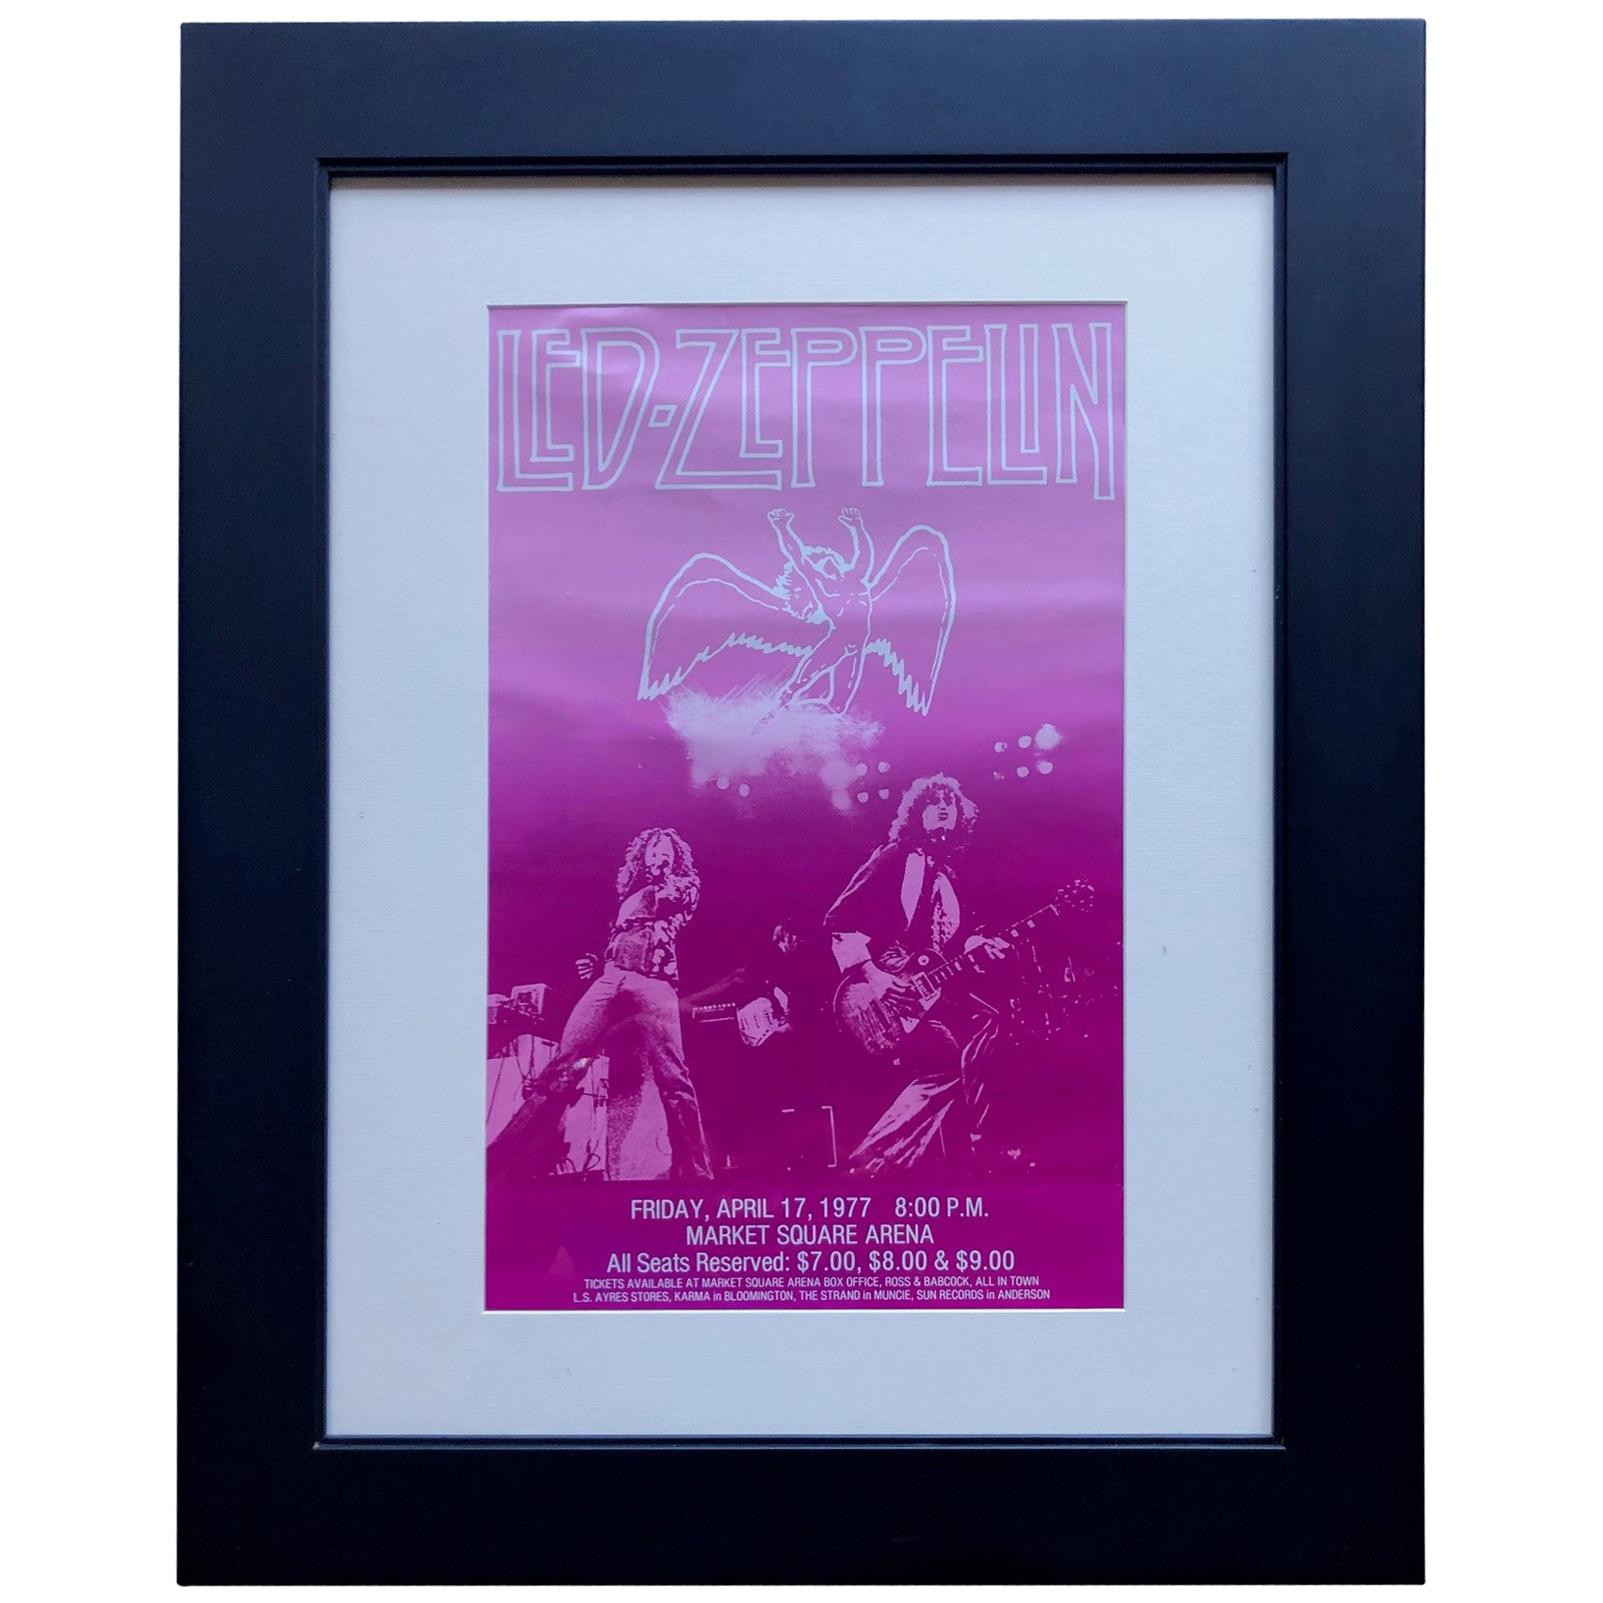 1977 Led Zeppelin Vintage Concert Poster Live at Market Square Arena